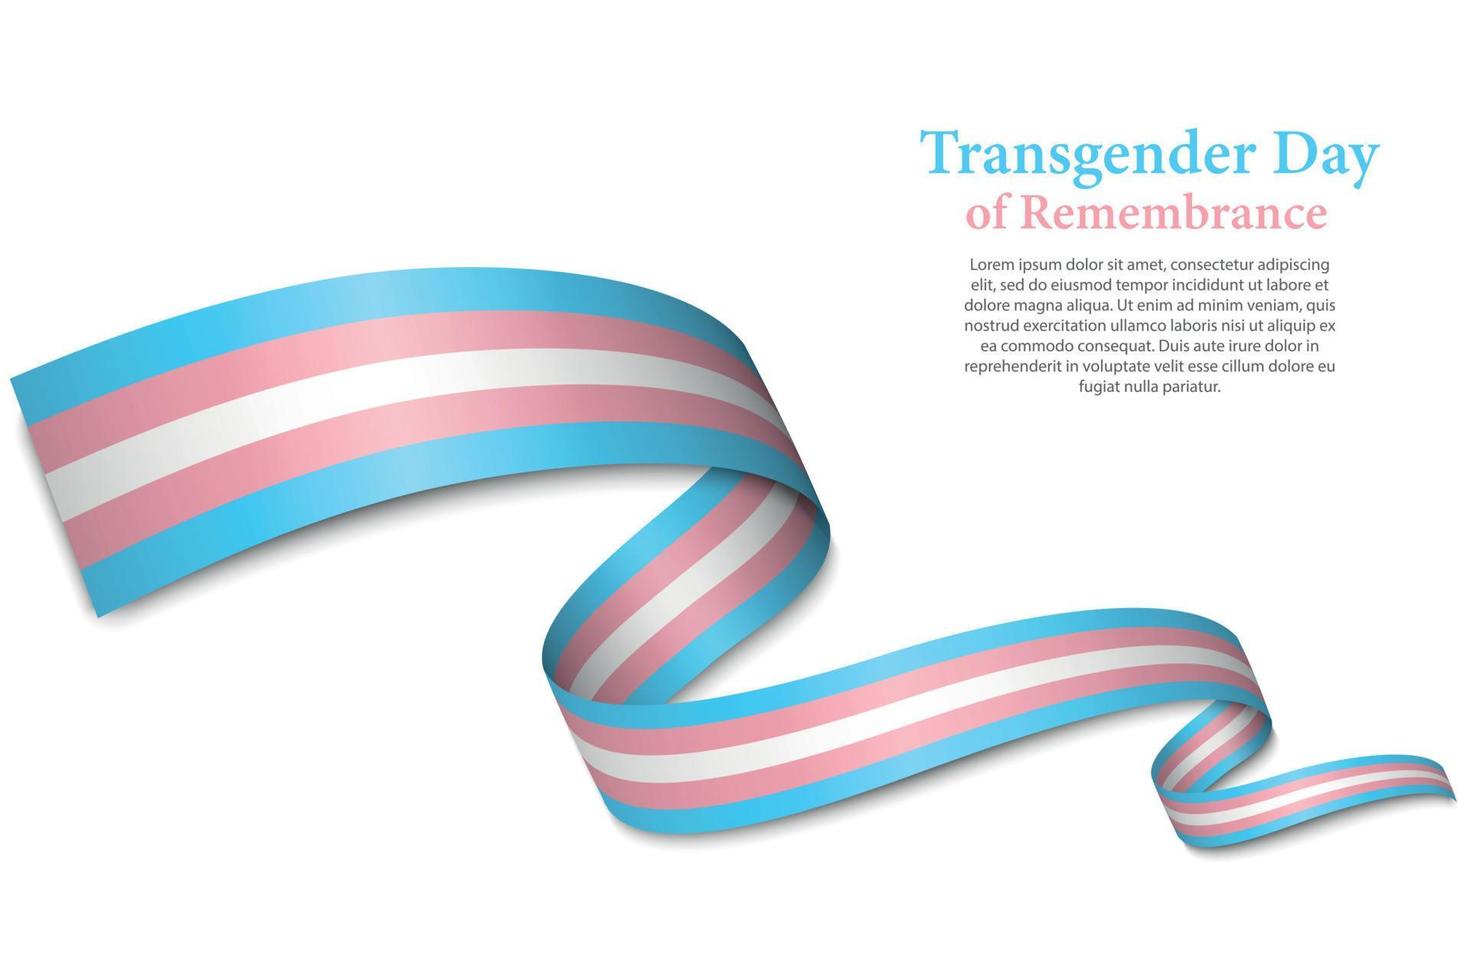 acenando a fita ou banner com bandeira do orgulho transgênero vetor